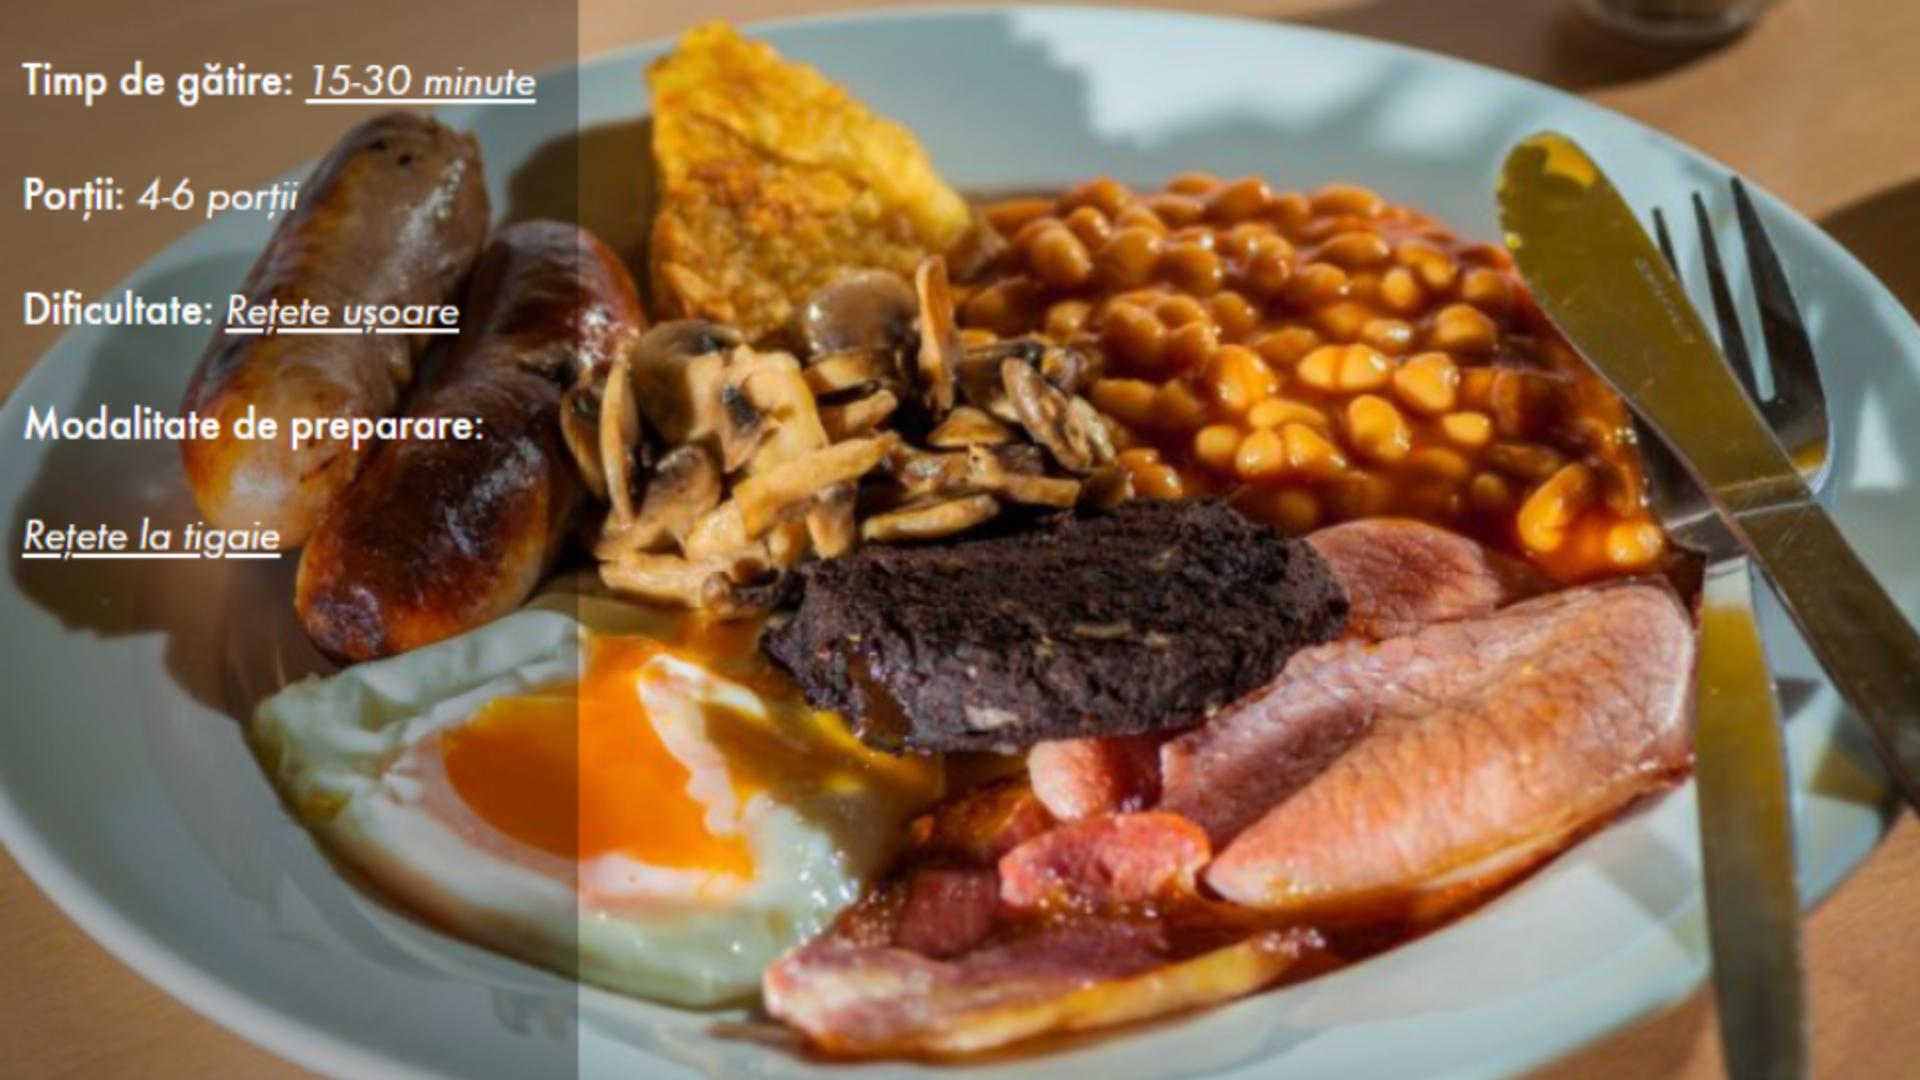 Mic dejun englezesc tradițional: rețeta sățioasă a lui Jamie Oliver, care te va energiza întreaga zi 